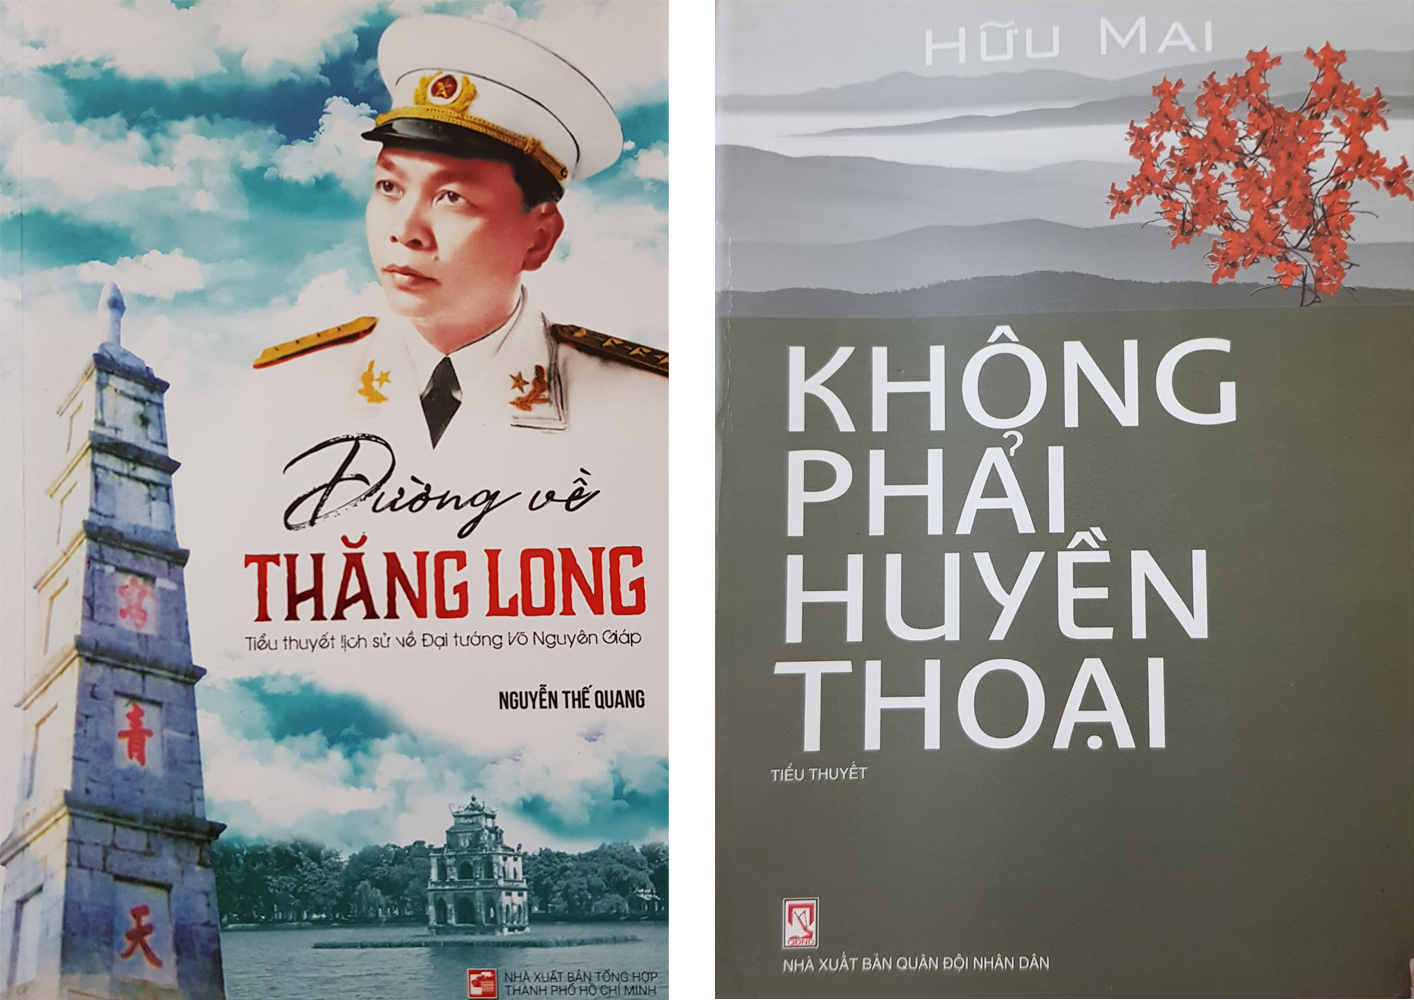 Đại tướng Võ Nguyên Giáp - hình tượng bất tử trong văn học Việt Nam